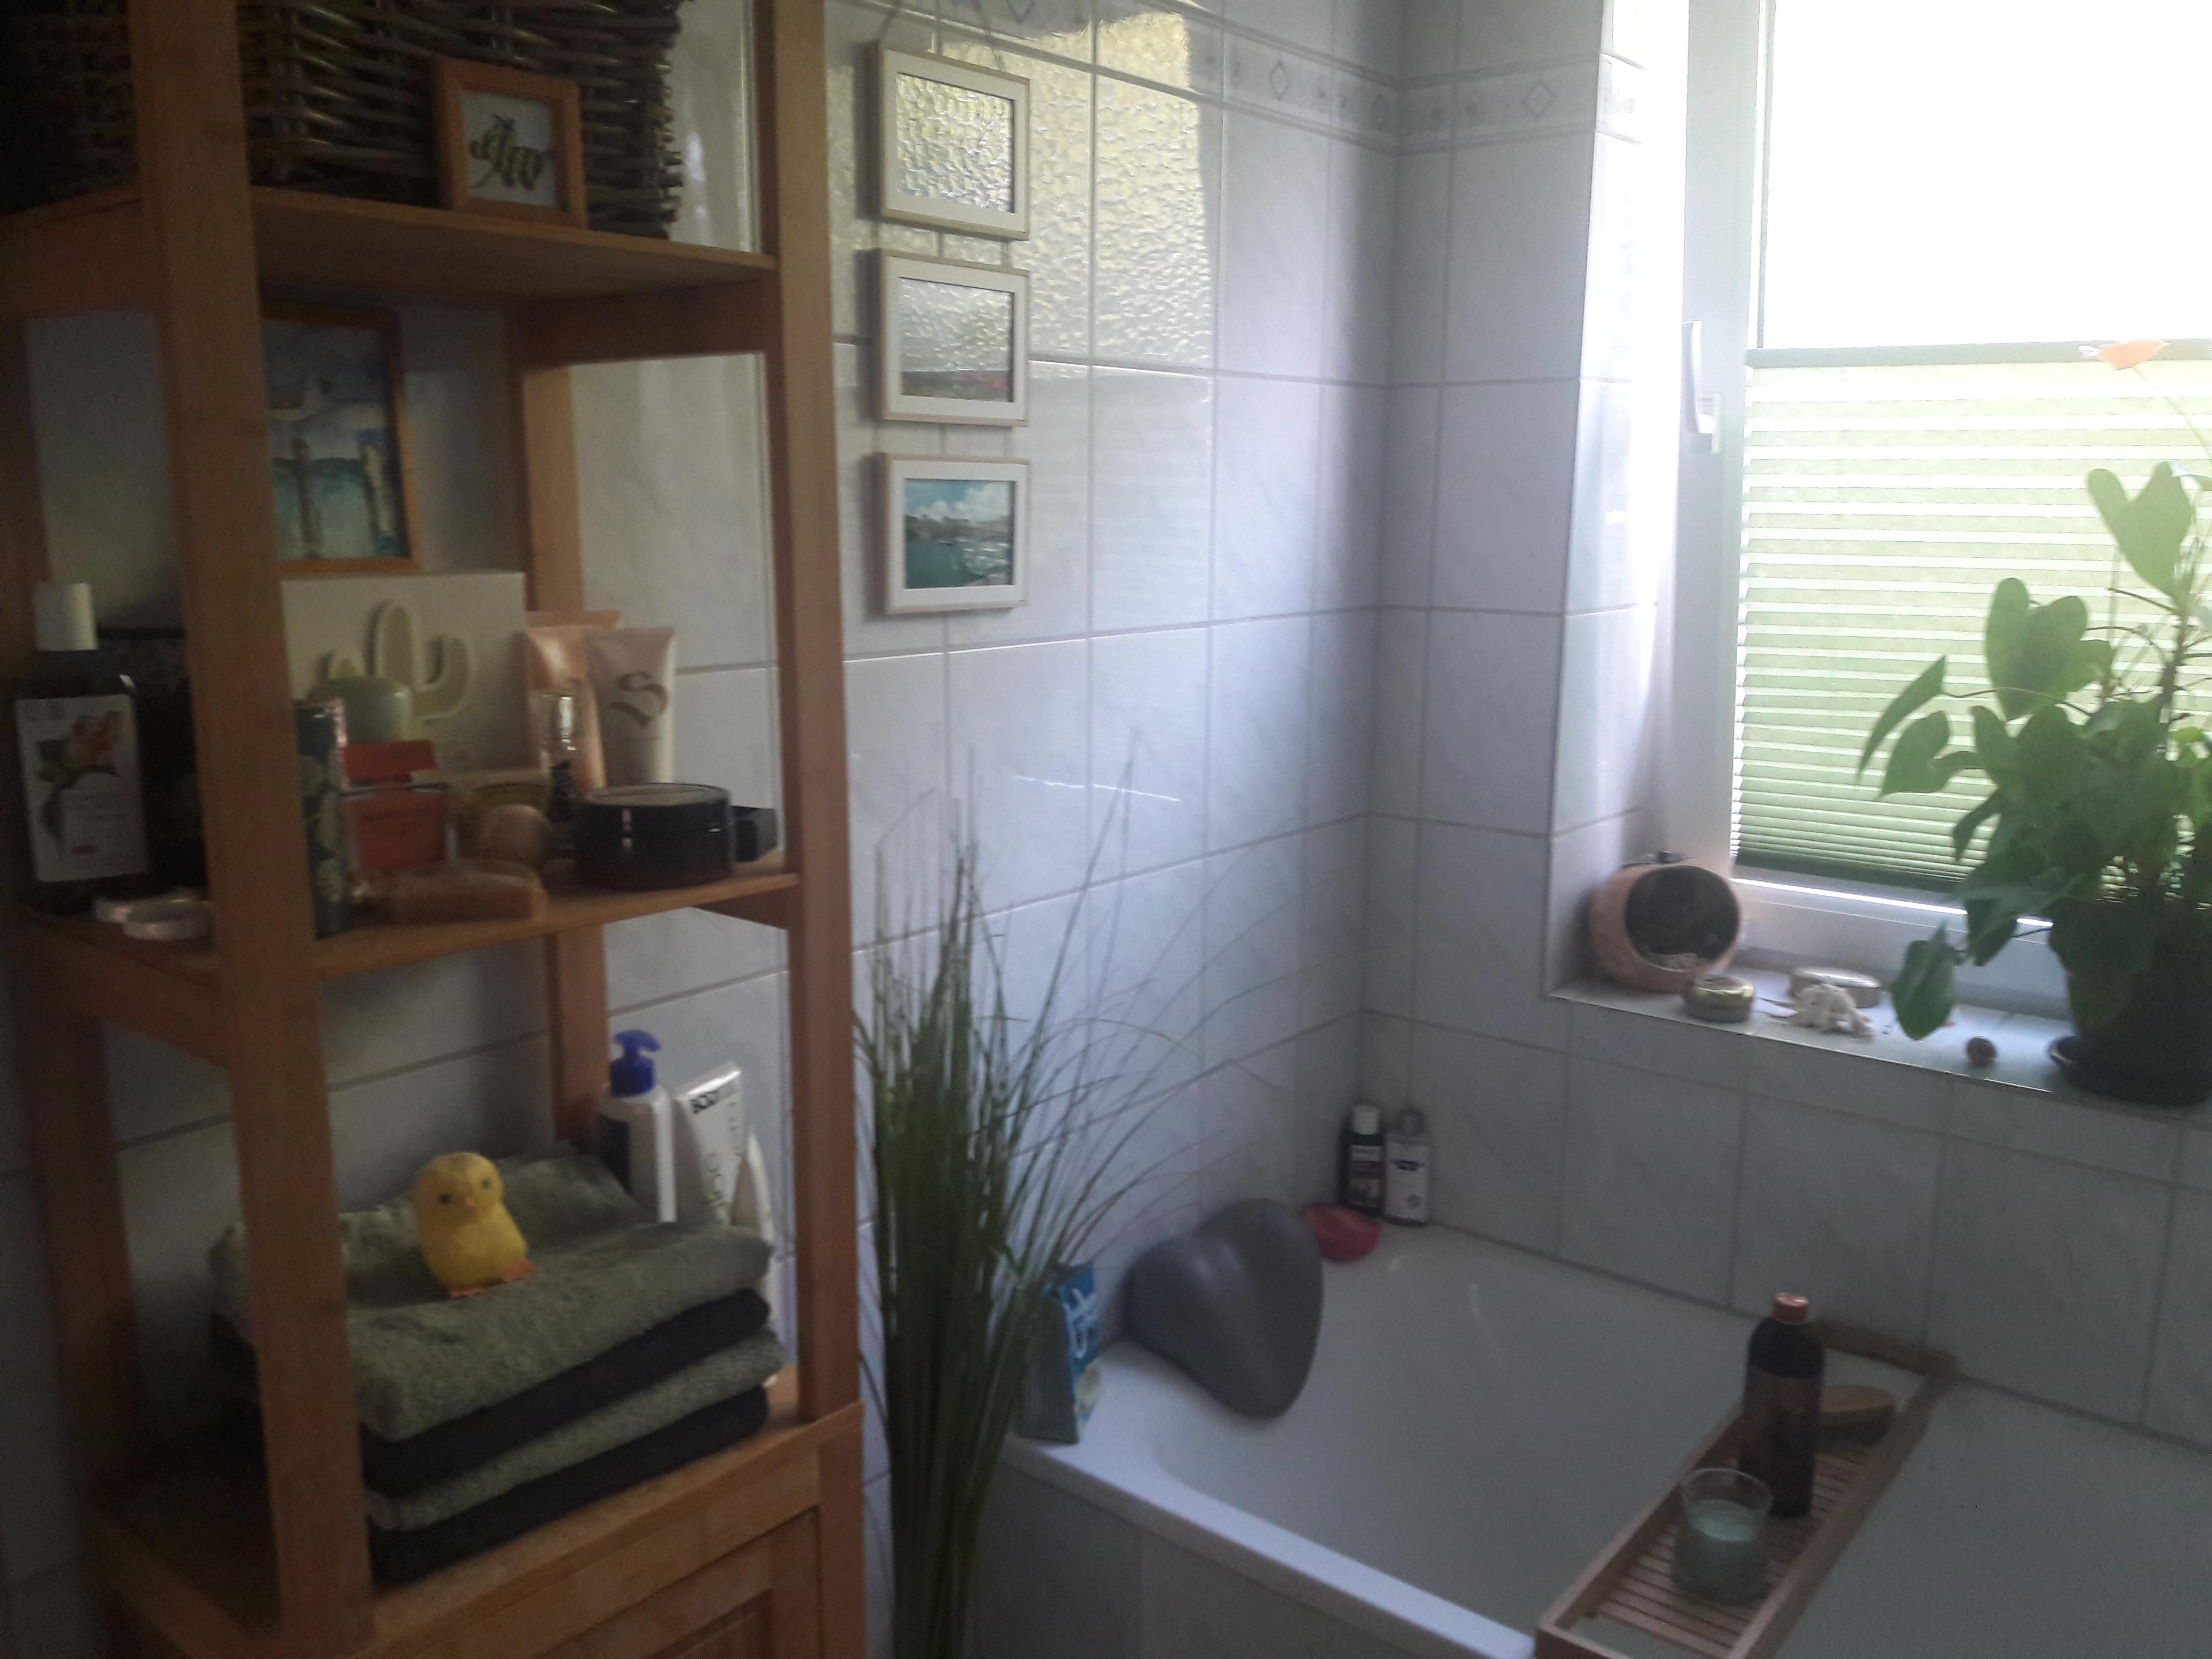 Kleines Bad aber gemütliche Badewanne #Badezimmer #livingchallenge